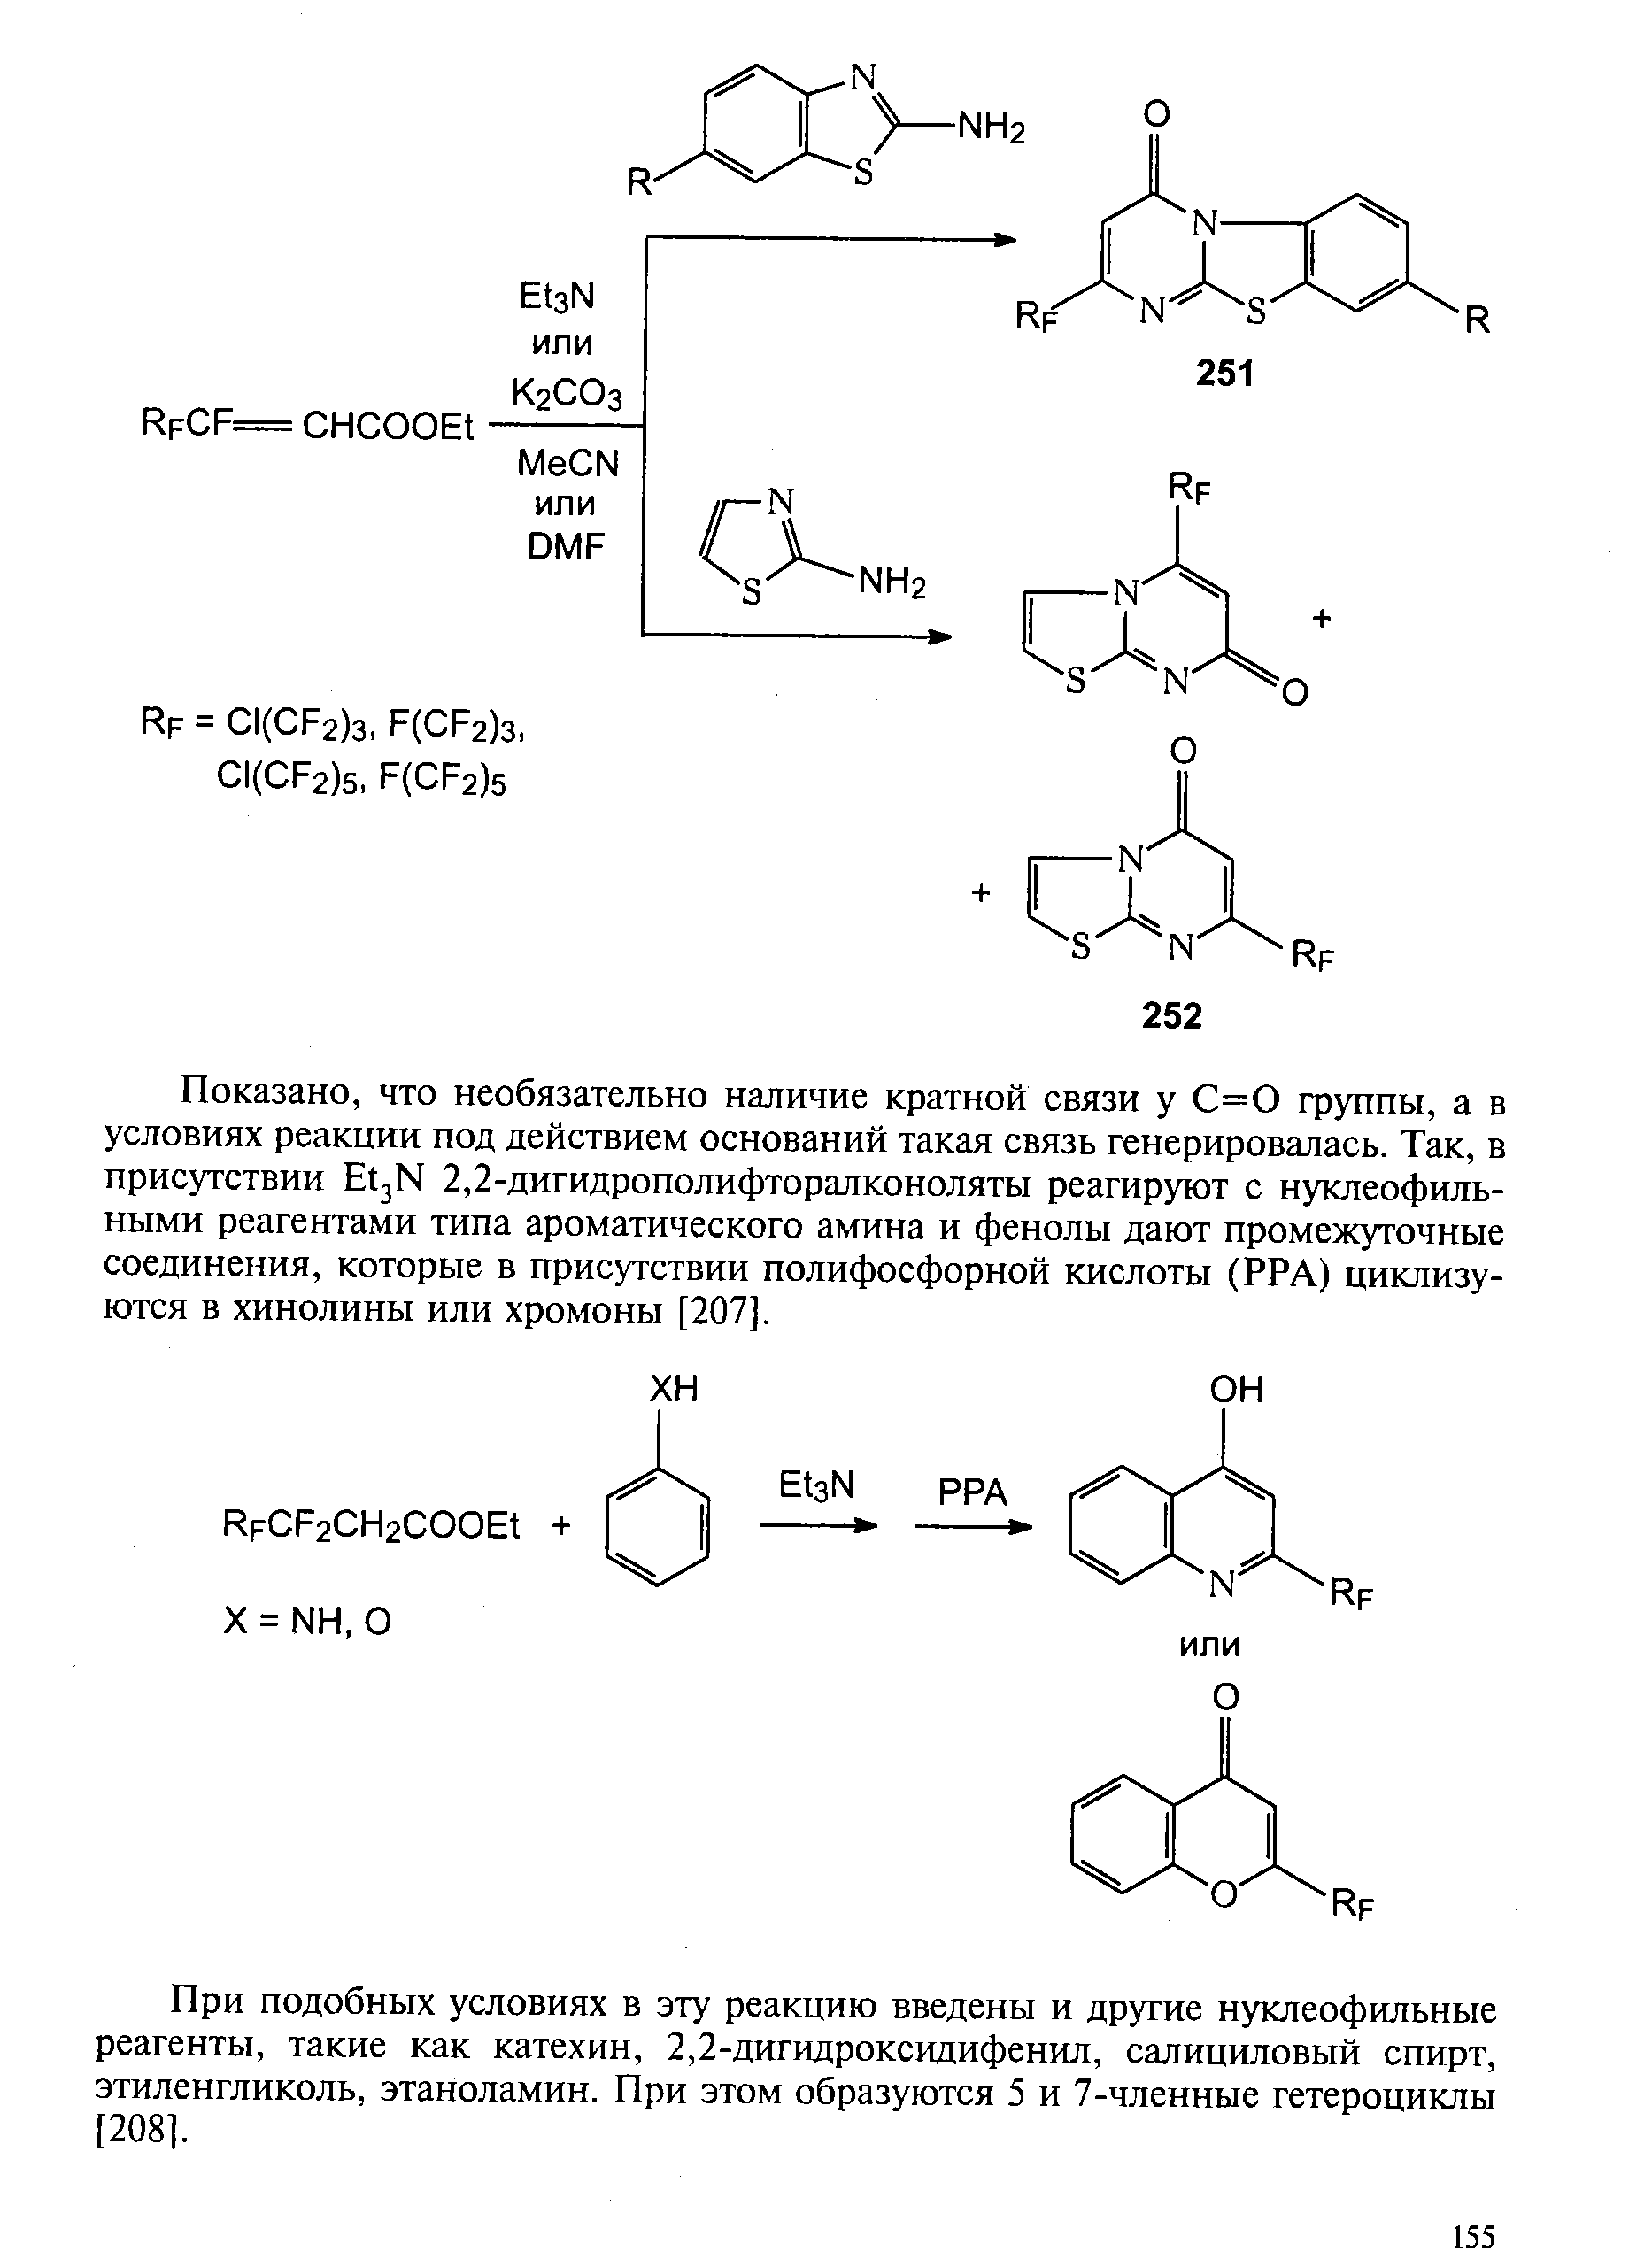 При подобных условиях в эту реакцию введены и другие нуклеофильные реагенты, такие как катехин, 2,2-дигидроксидифенил, салициловый спирт, этиленгликоль, этаноламин. При этом образуются 5 и 7-членные гетероциклы [208].